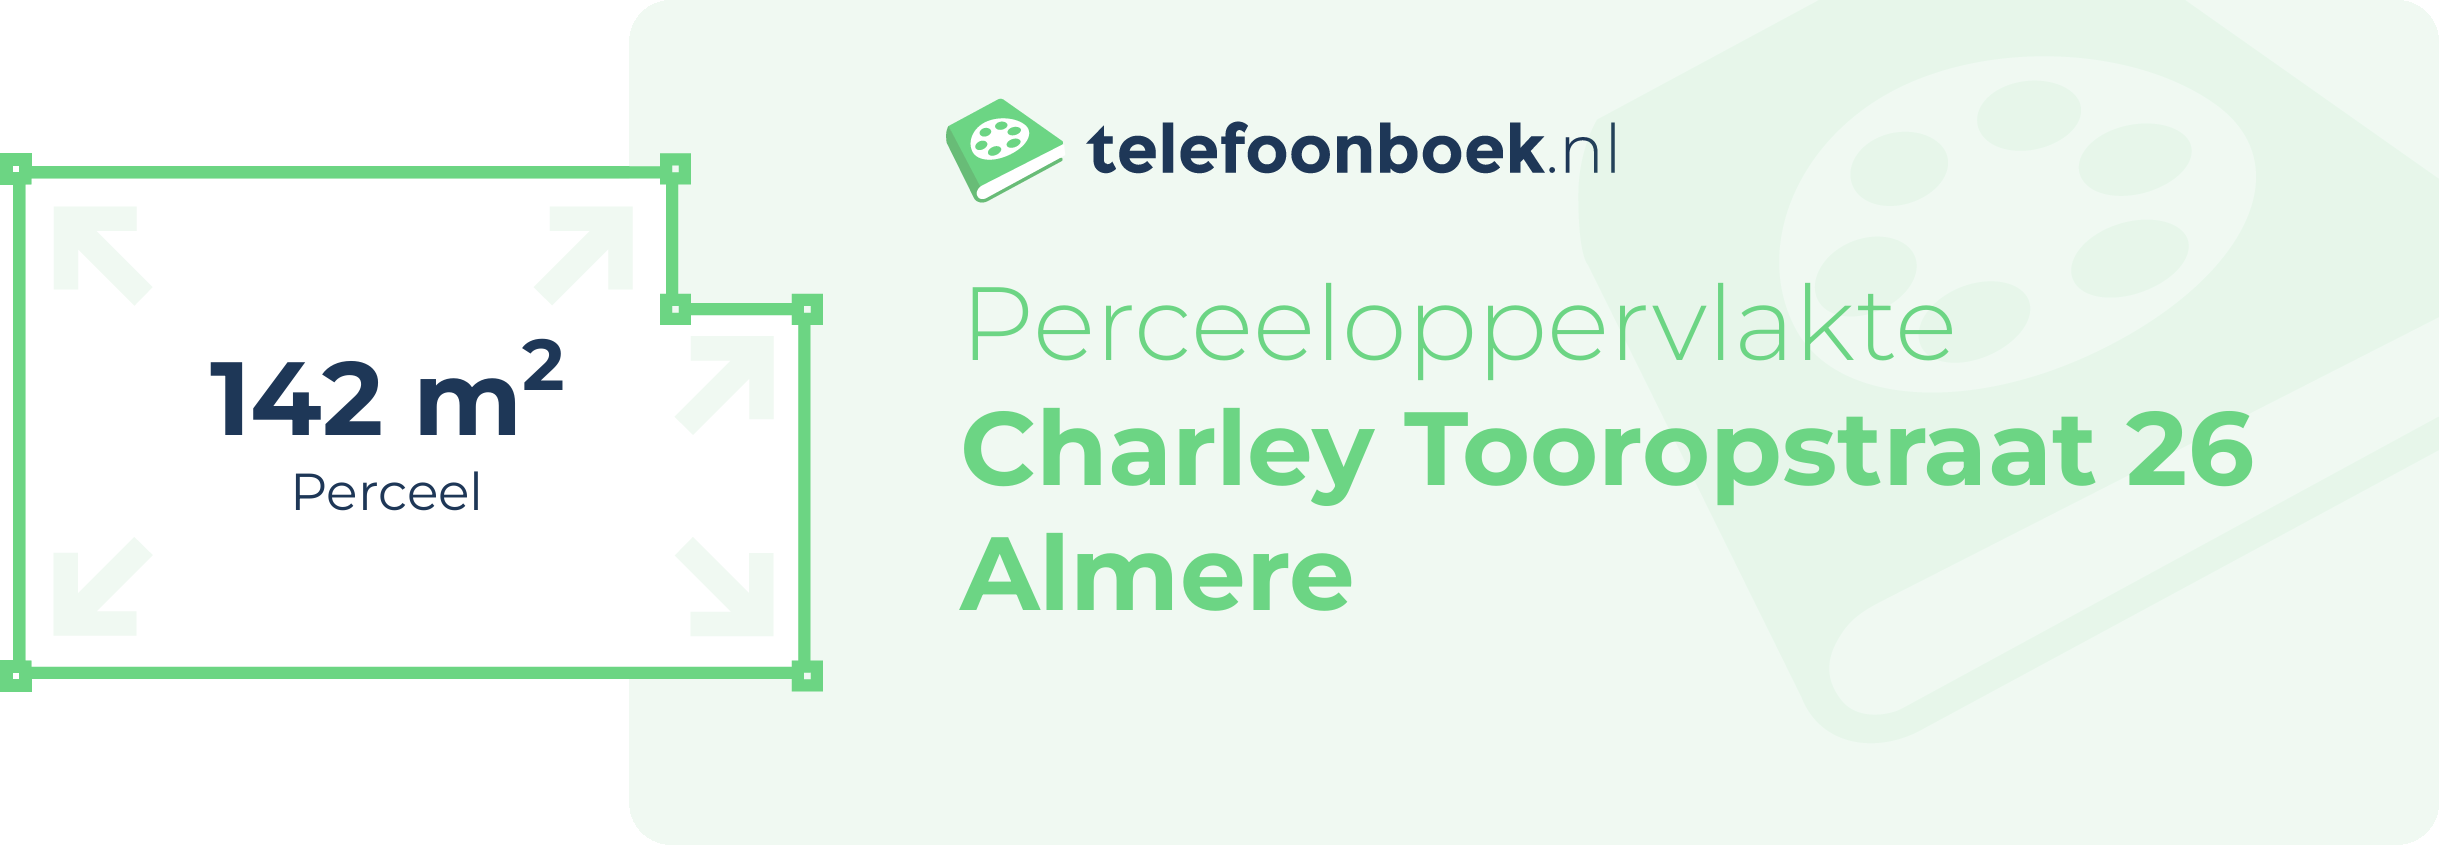 Perceeloppervlakte Charley Tooropstraat 26 Almere